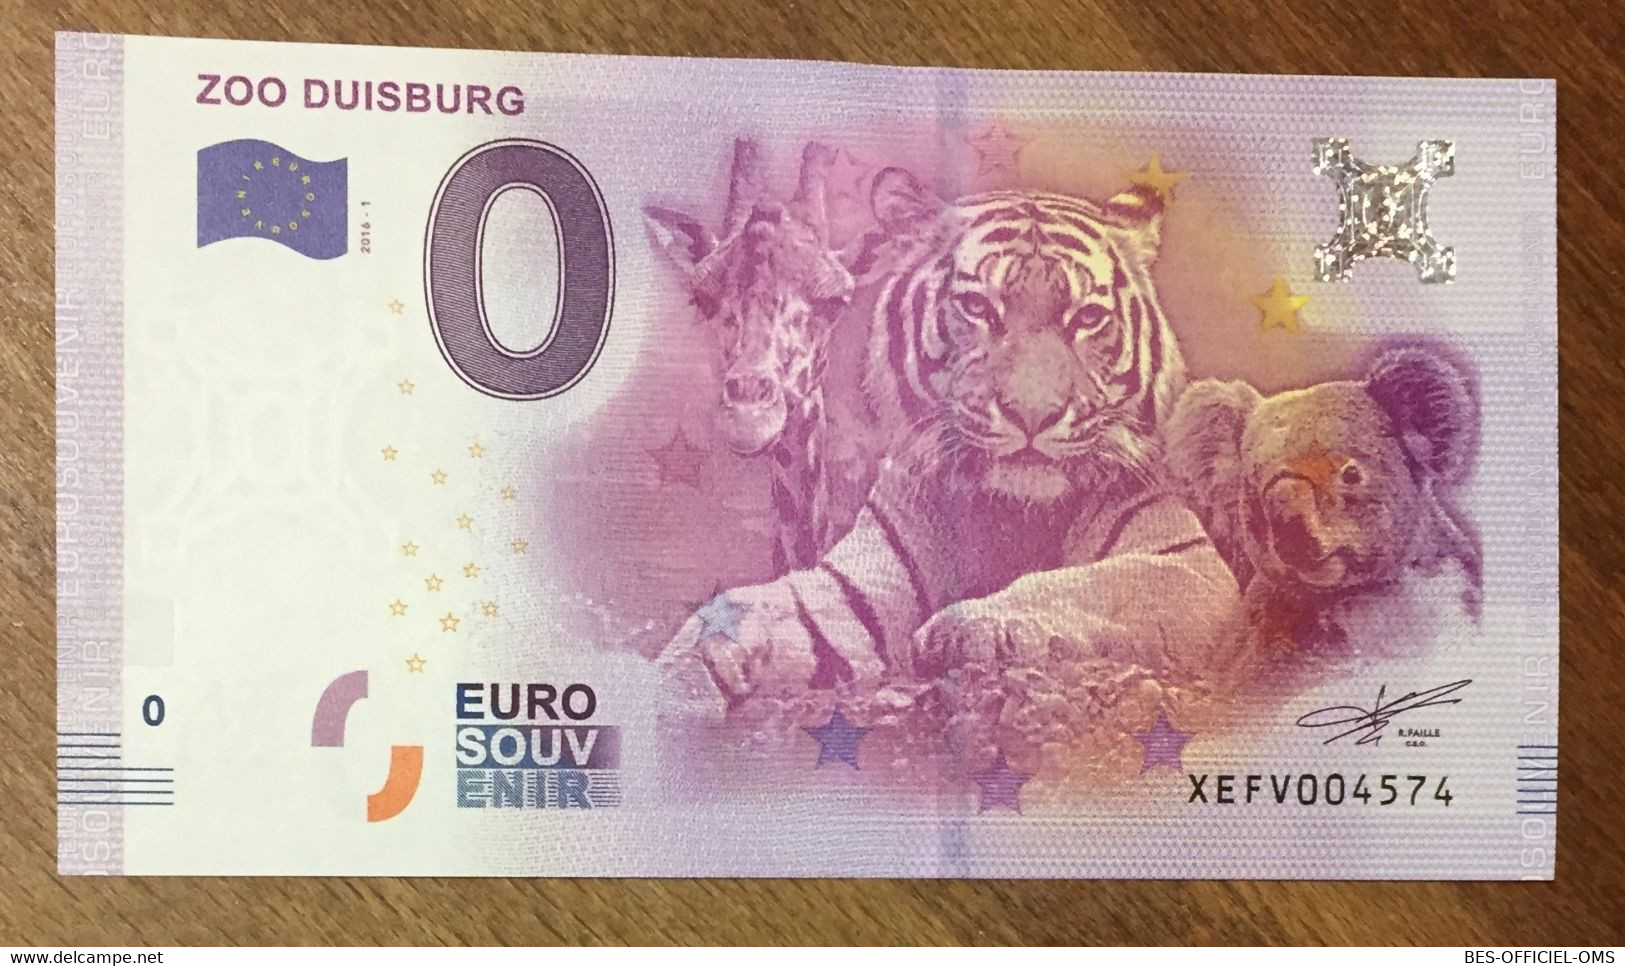 2016 BILLET 0 EURO SOUVENIR ALLEMAGNE DEUTSCHLAND ZOO DUISBURG ZERO 0 EURO SCHEIN BANKNOTE PAPER MONEY - [17] Fakes & Specimens